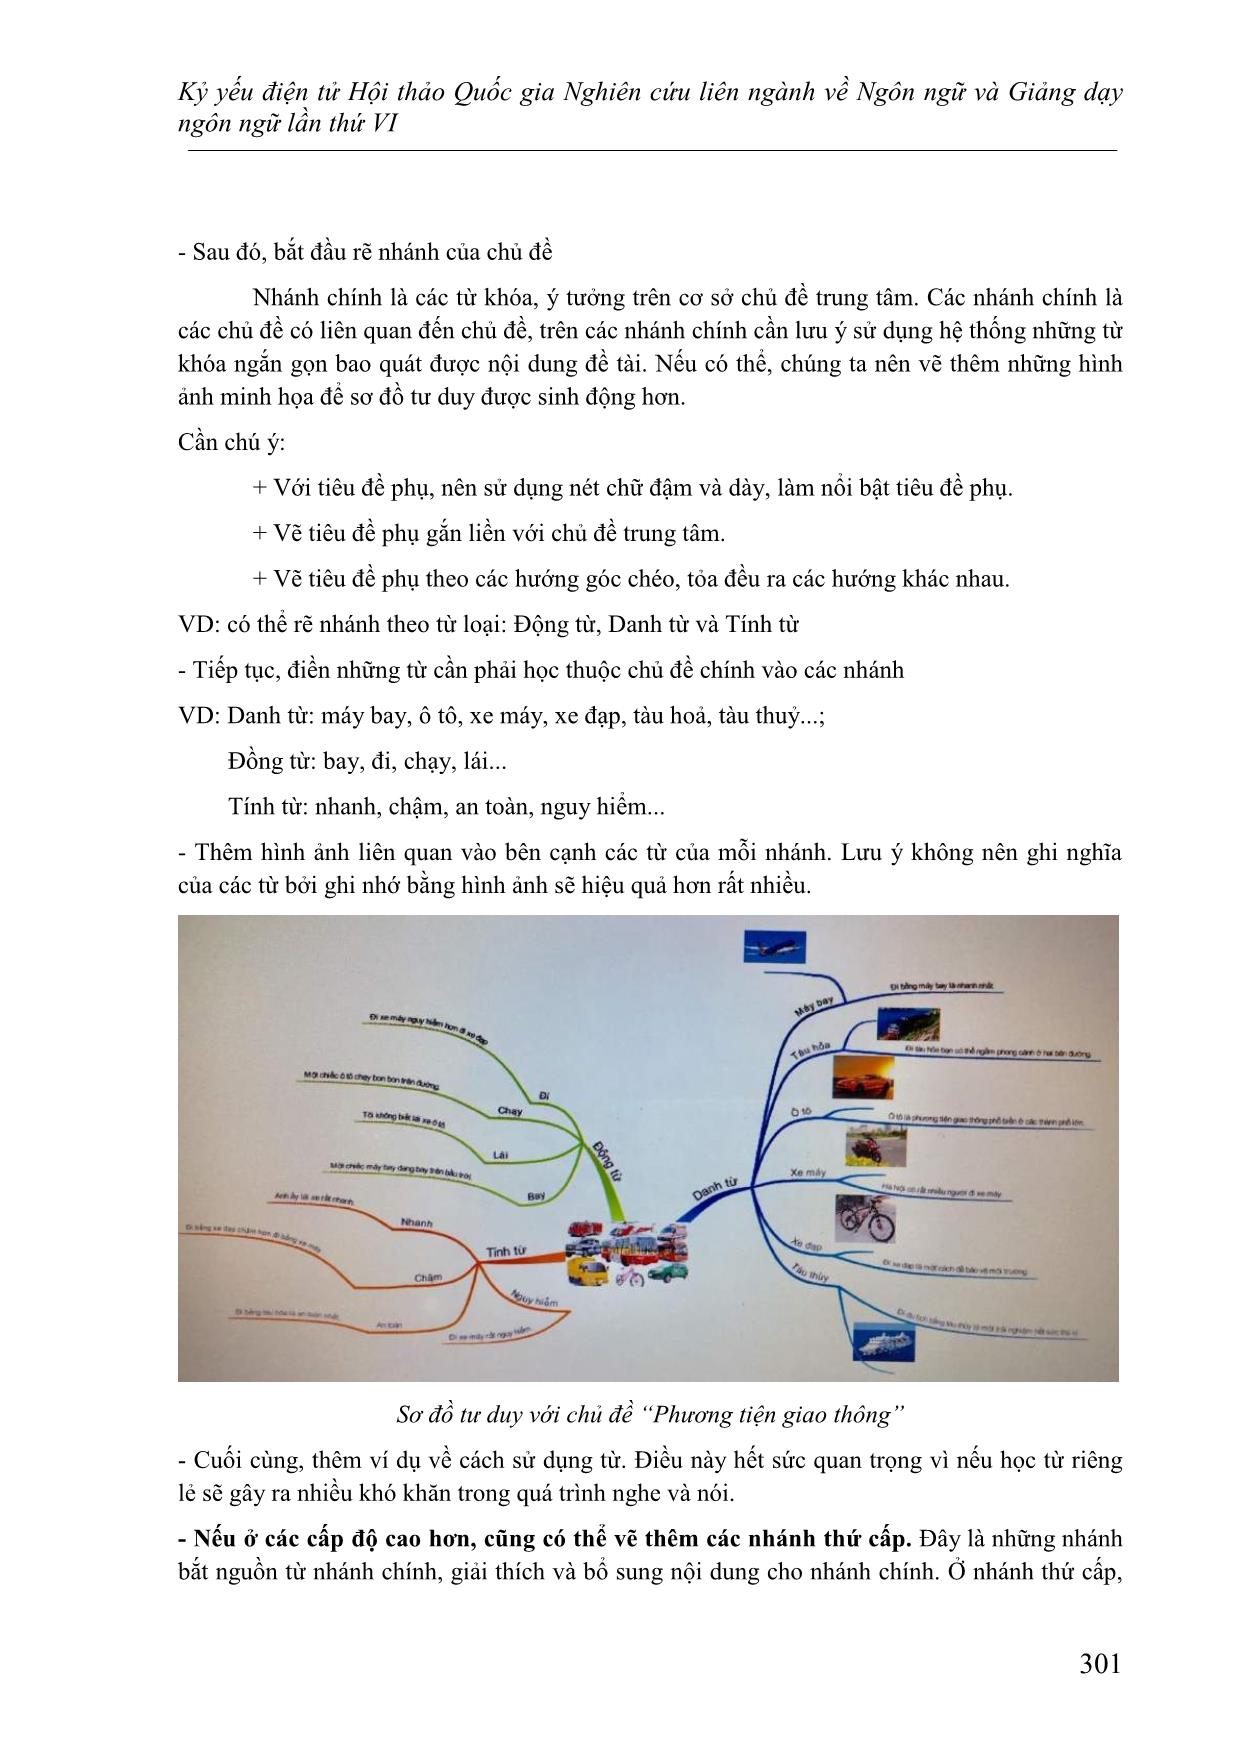 Phương pháp dạy từ vựng tiếng Việt cho người nước ngoài bằng sơ đồ tư duy trang 10